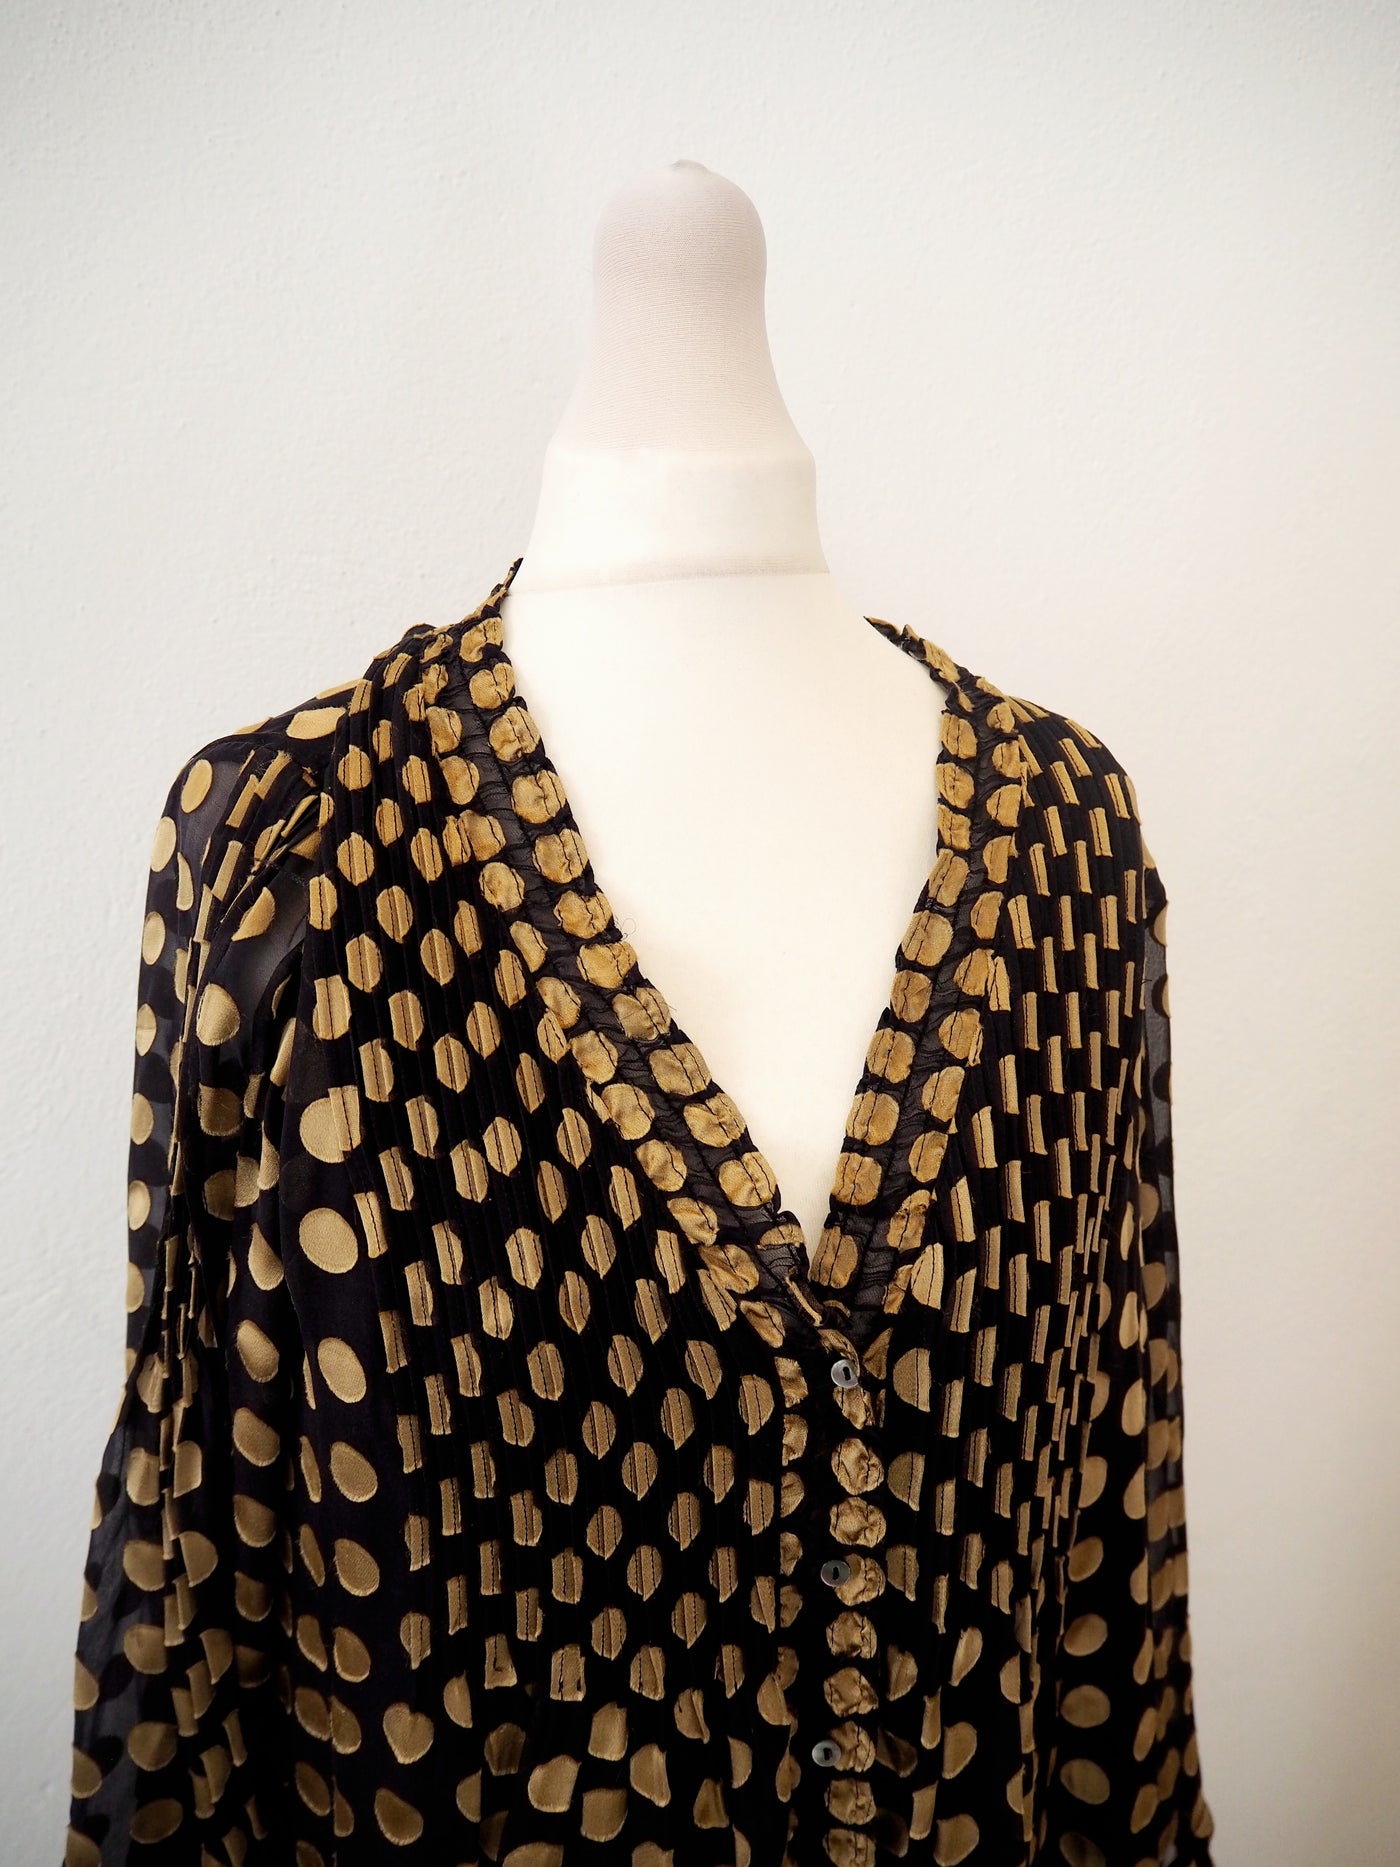 Diane Von Furstenburg Layla Black gold spot dress 8